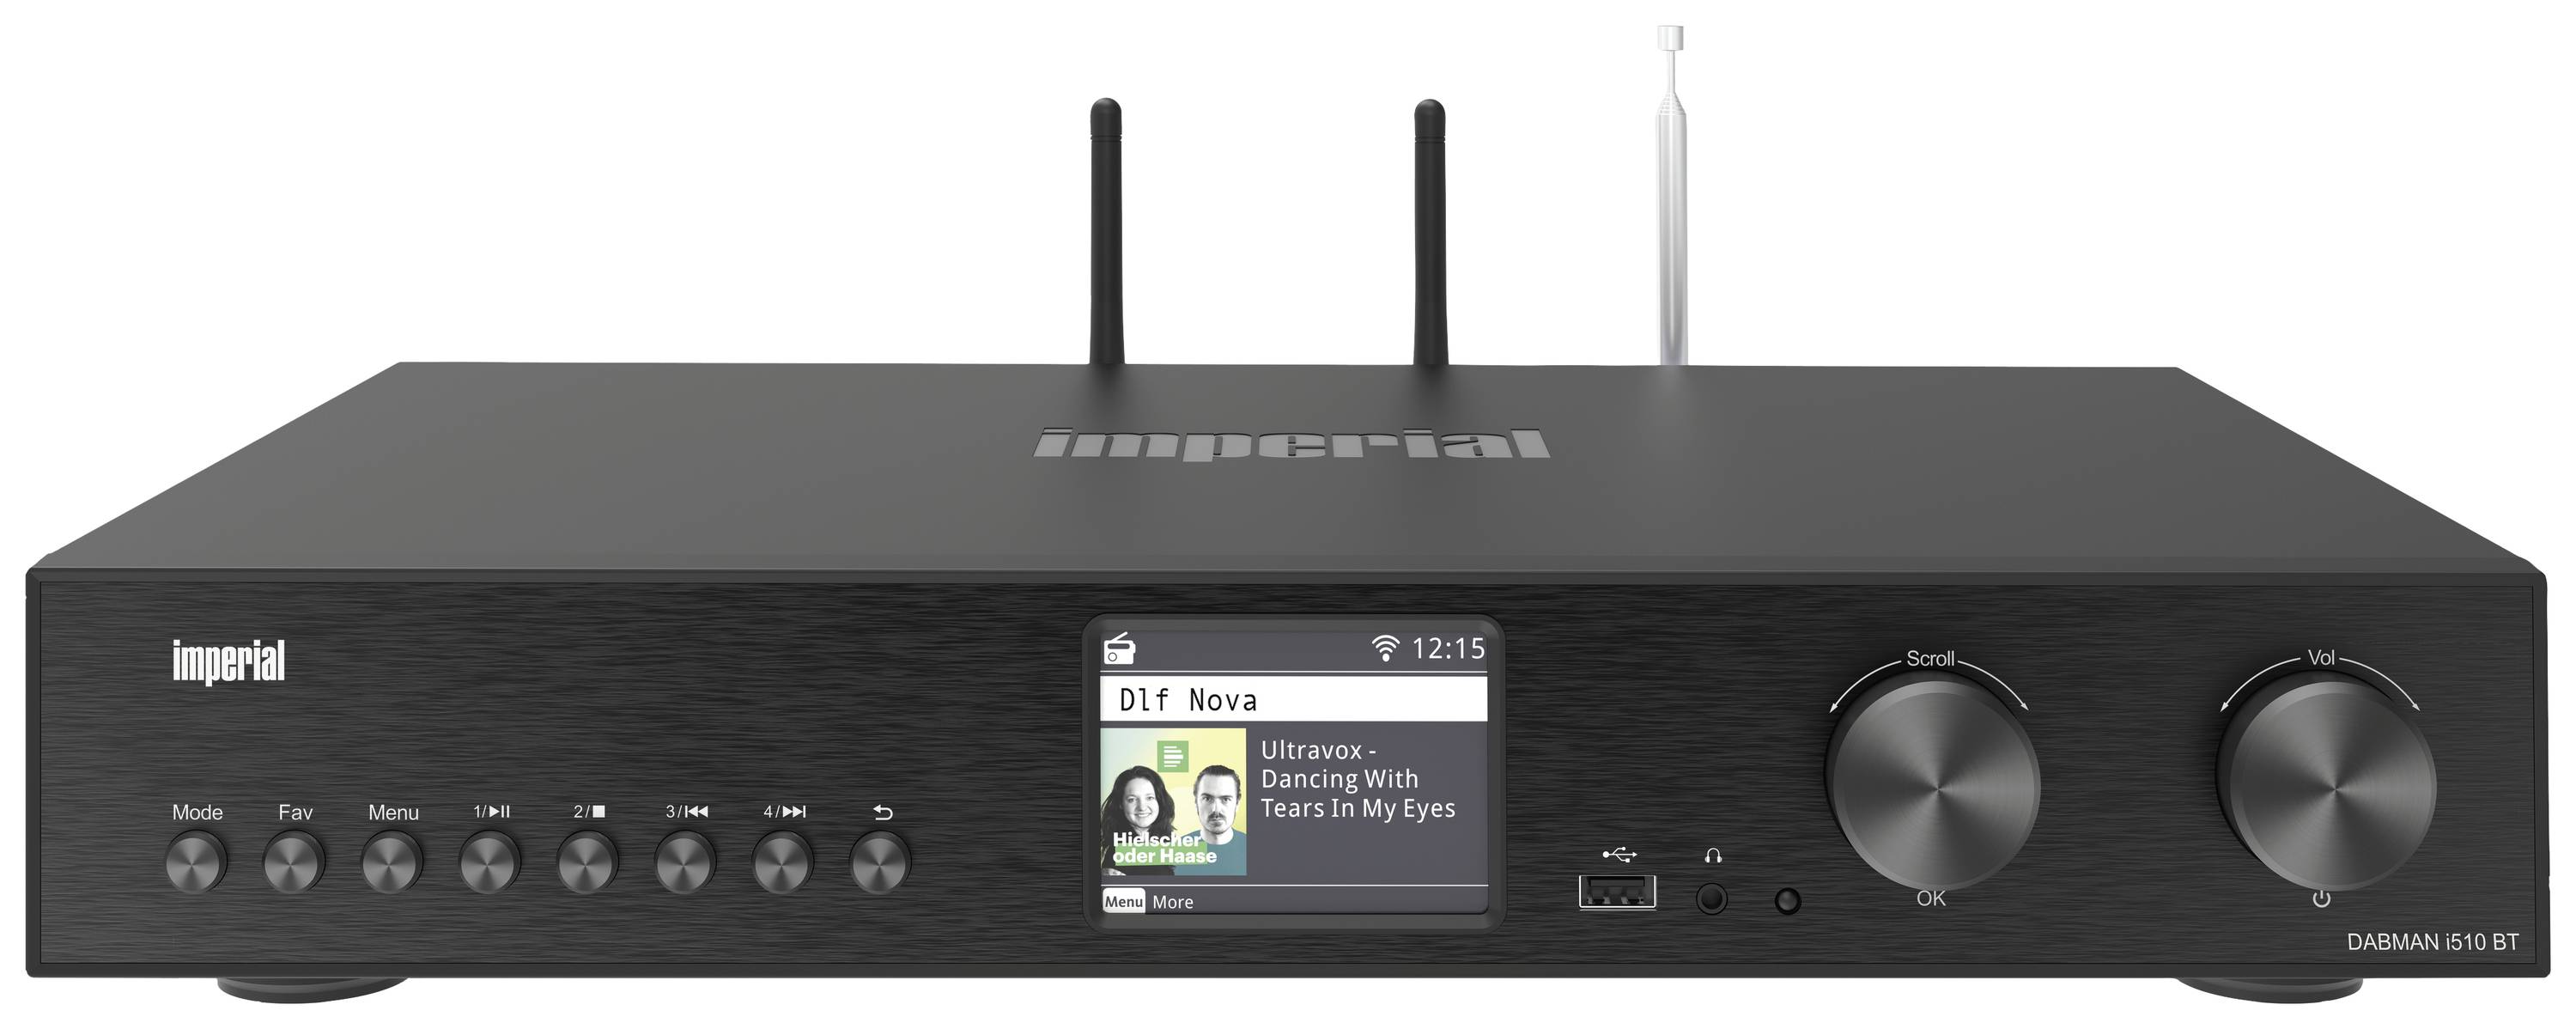 Imperial DABMAN i510 BT Hi-Fi internet radio tuner Black Bluetooth®, DAB+,  USB, Wi-Fi, Internet radio 